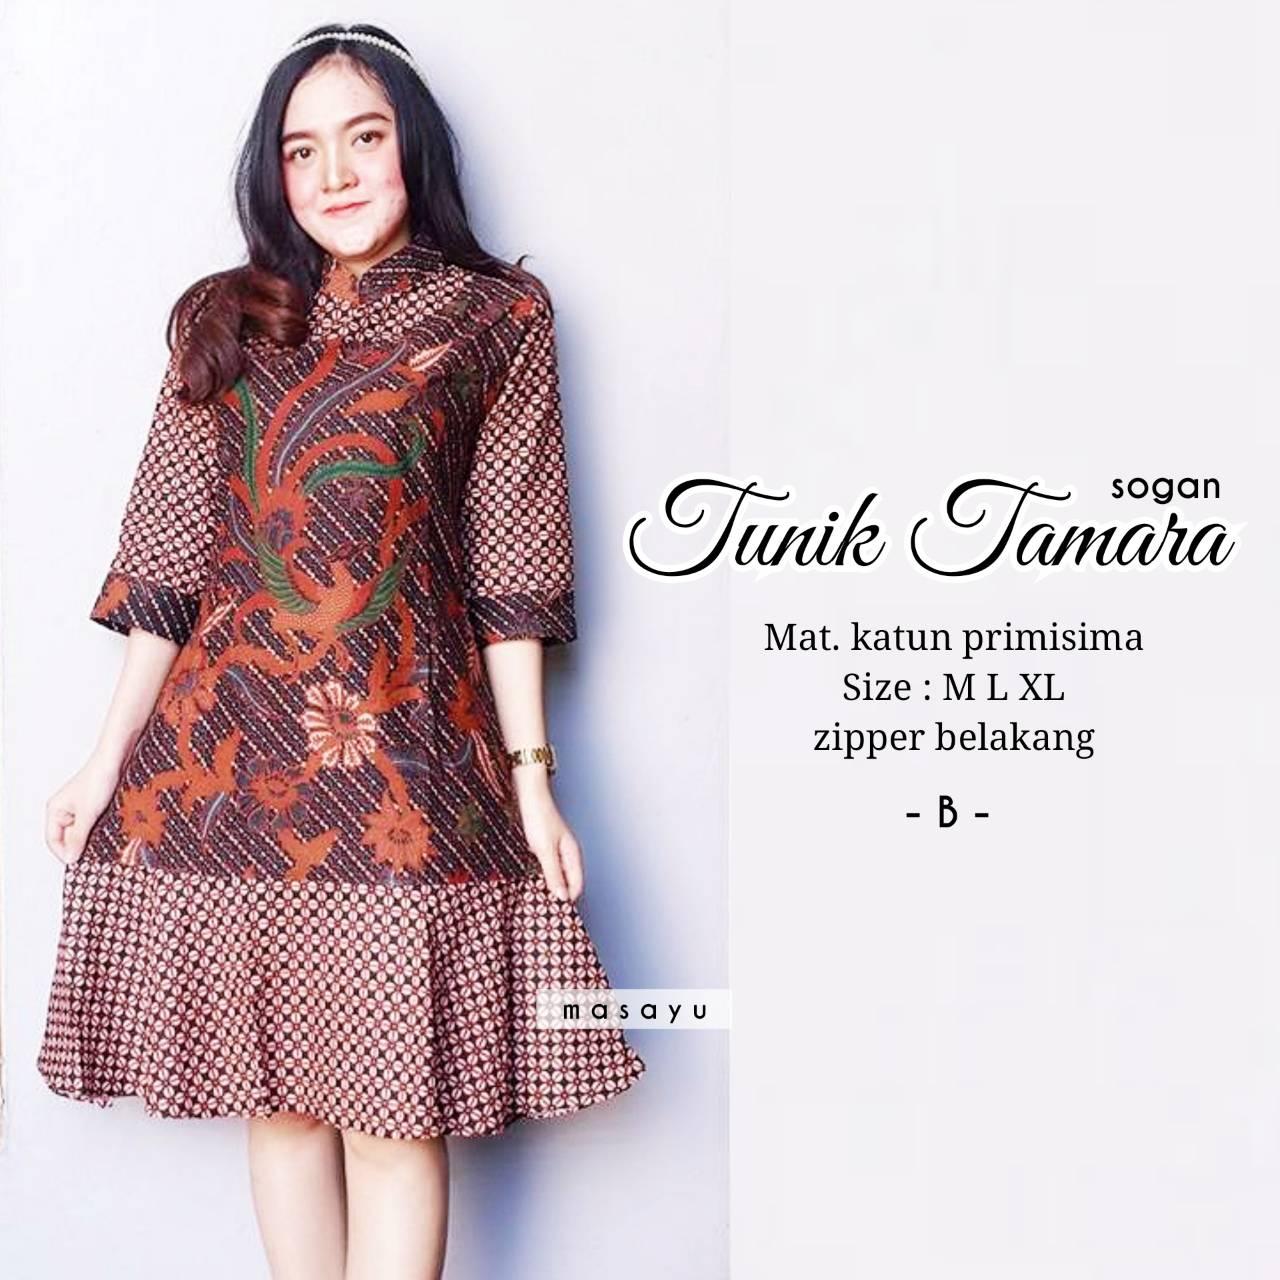 Get Inspired For Model Baju Batik Atasan Tunik | Busana Trends